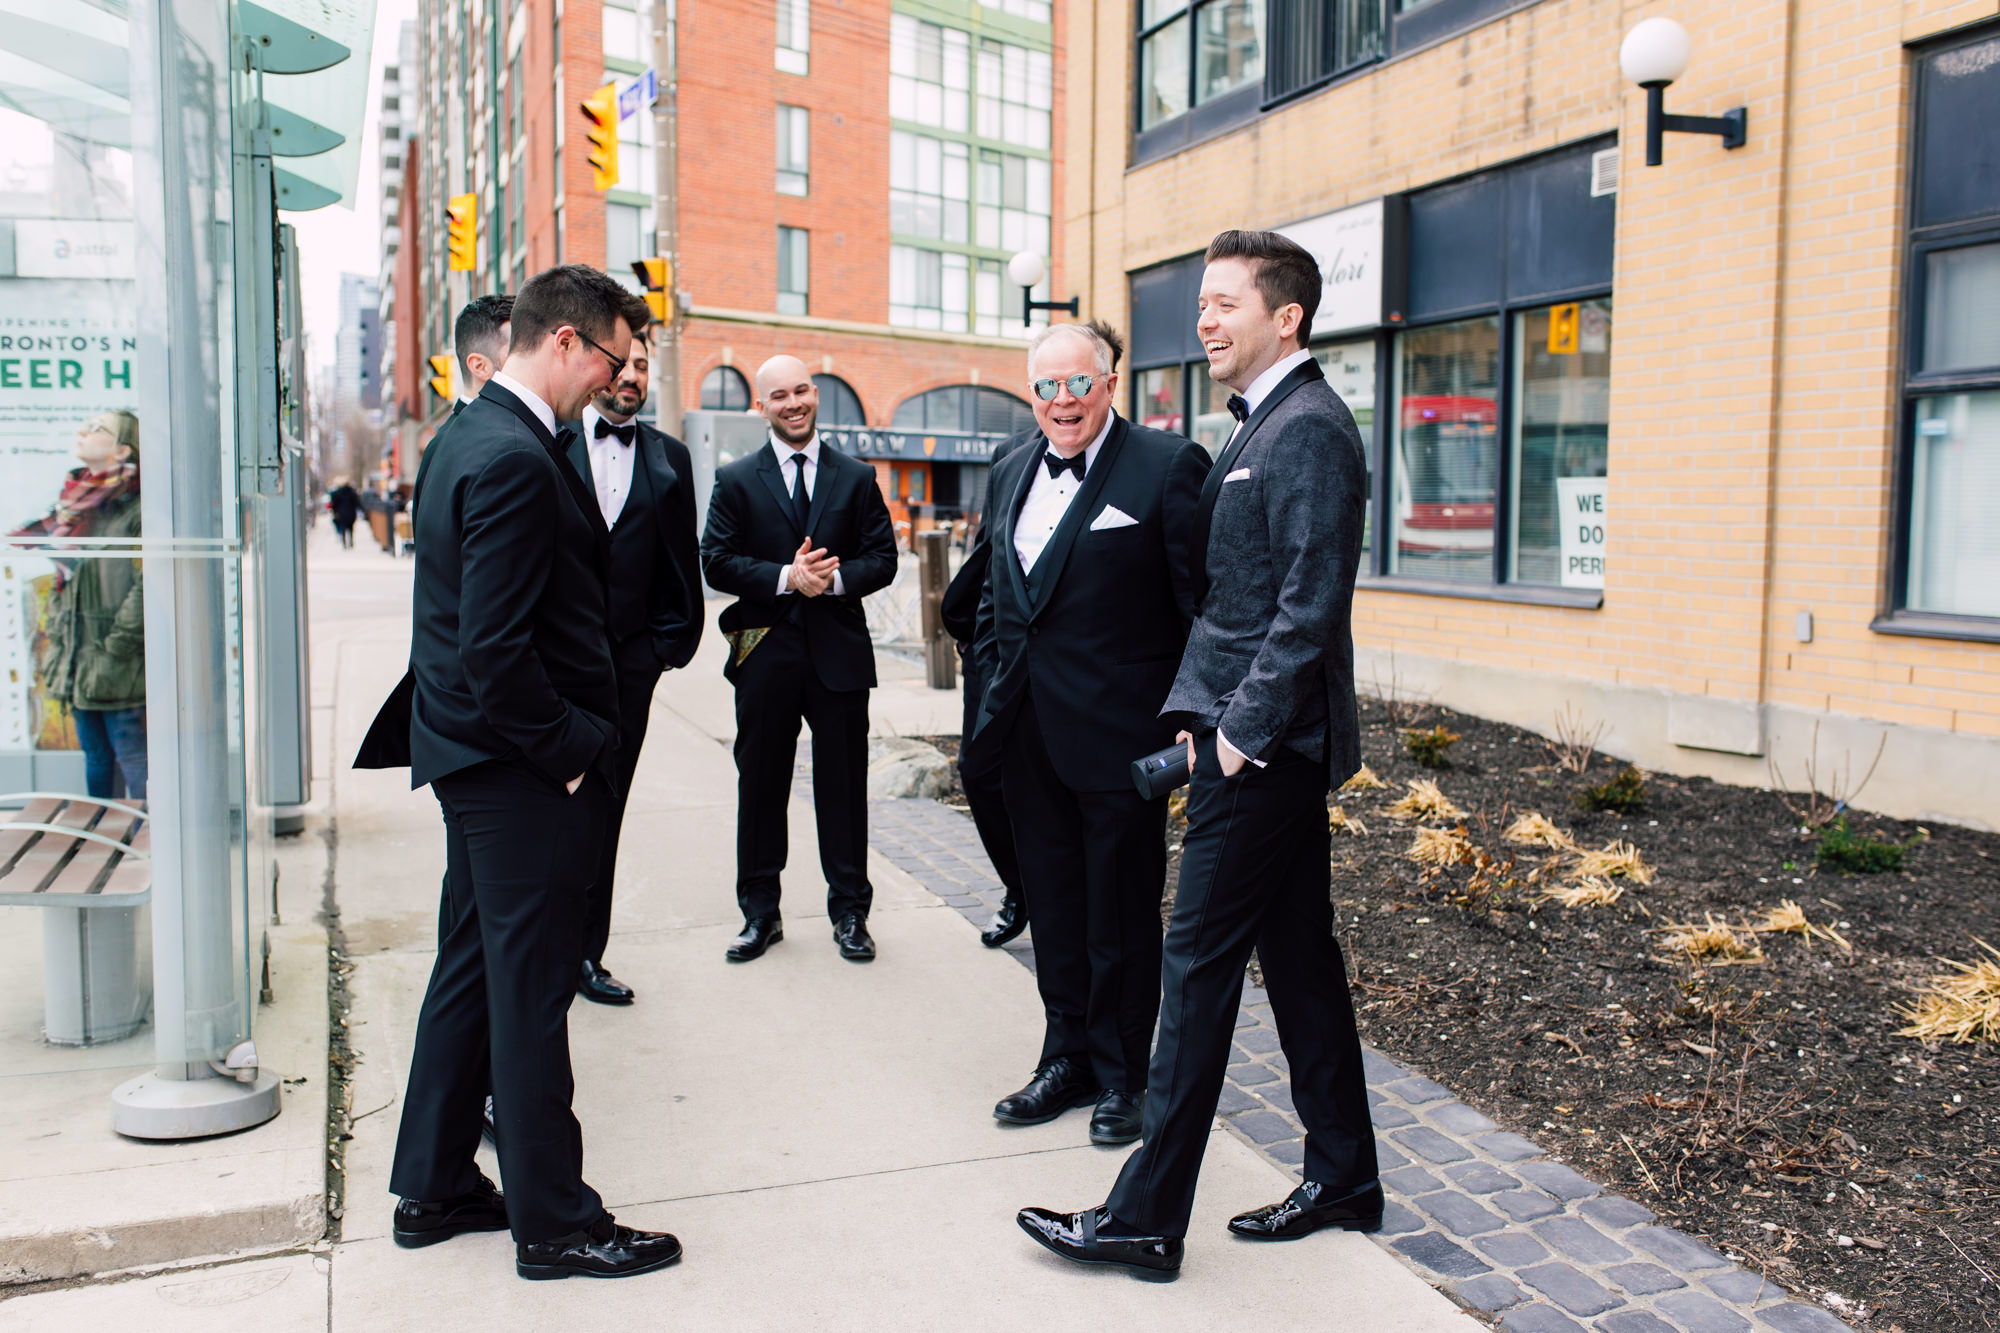 groomsmen before wedding